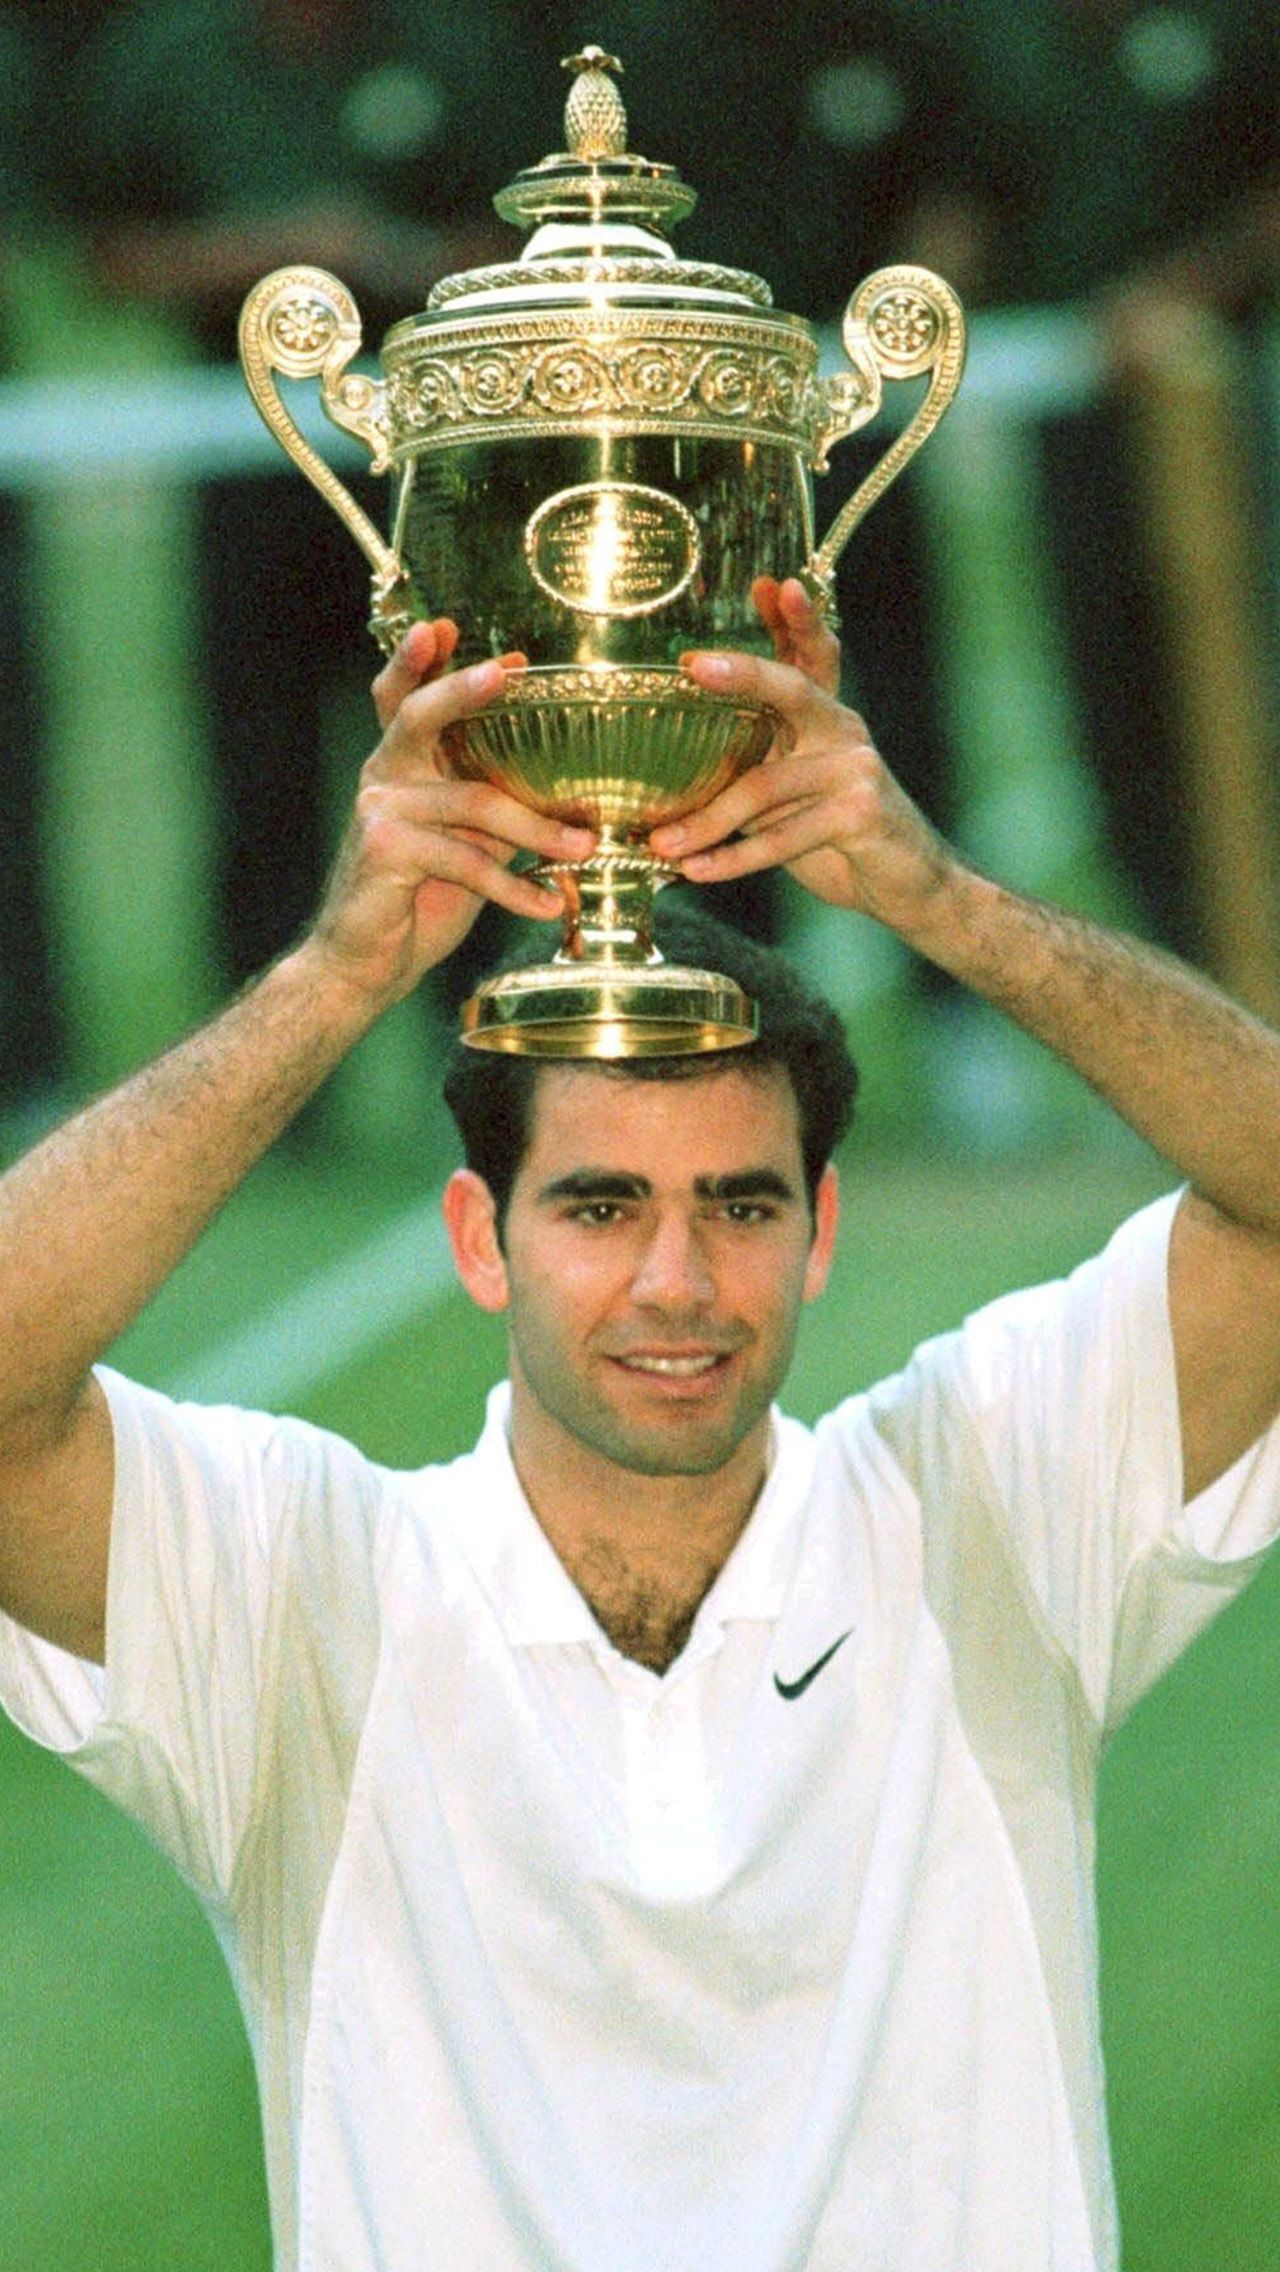 До этого было 4 случая, когда теннисисты поднимались с 4-го на 1-е место: Карлос Мойя (март-1999), Андре Агасси (июль-1999), Пит Сампрас (сентябрь-2000) и Карлос Алькарас (сентябрь-2022).